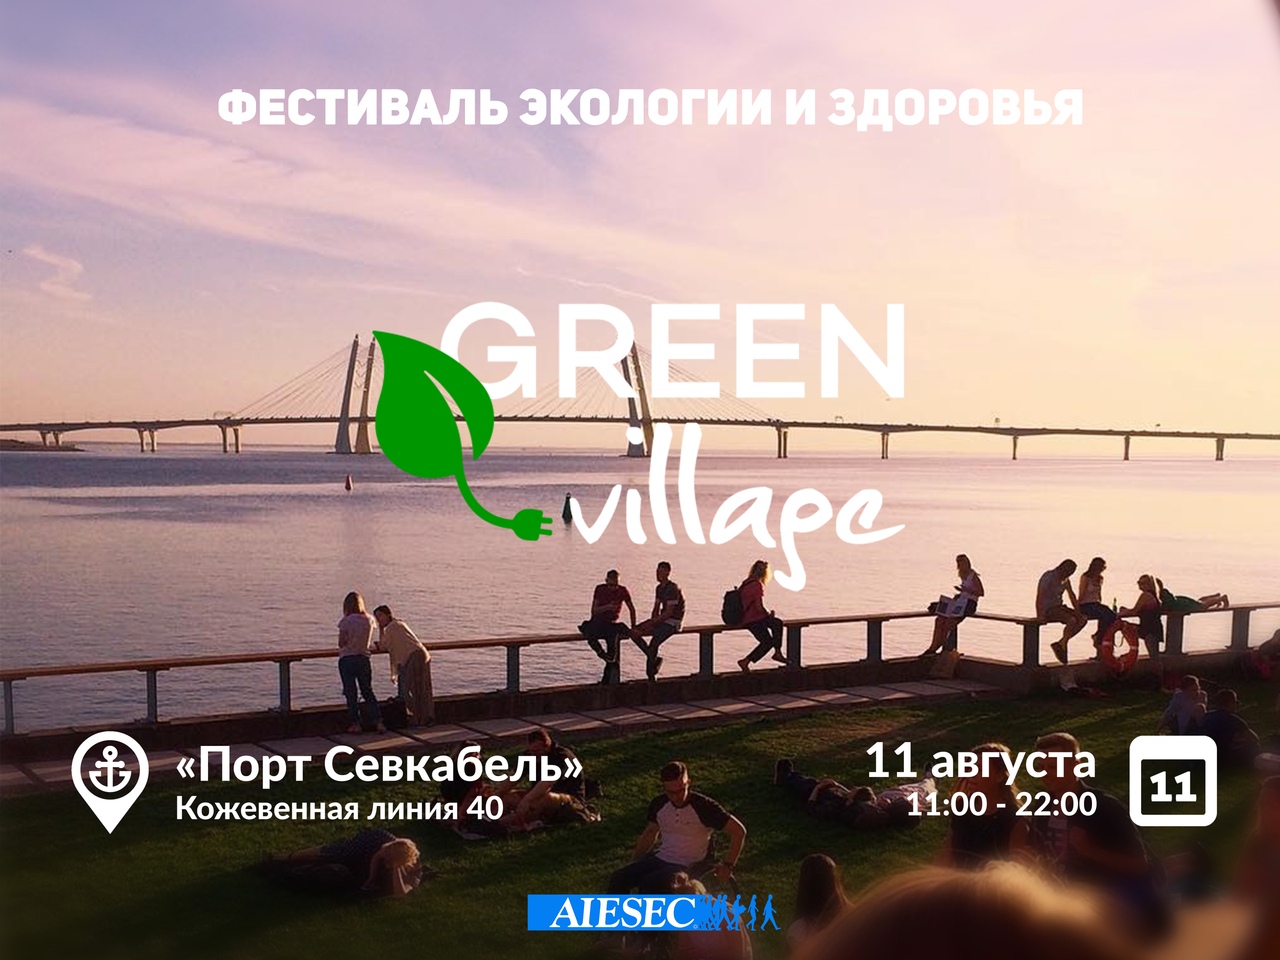 Фестиваль экологии и здоровья пройдет в Петербурге